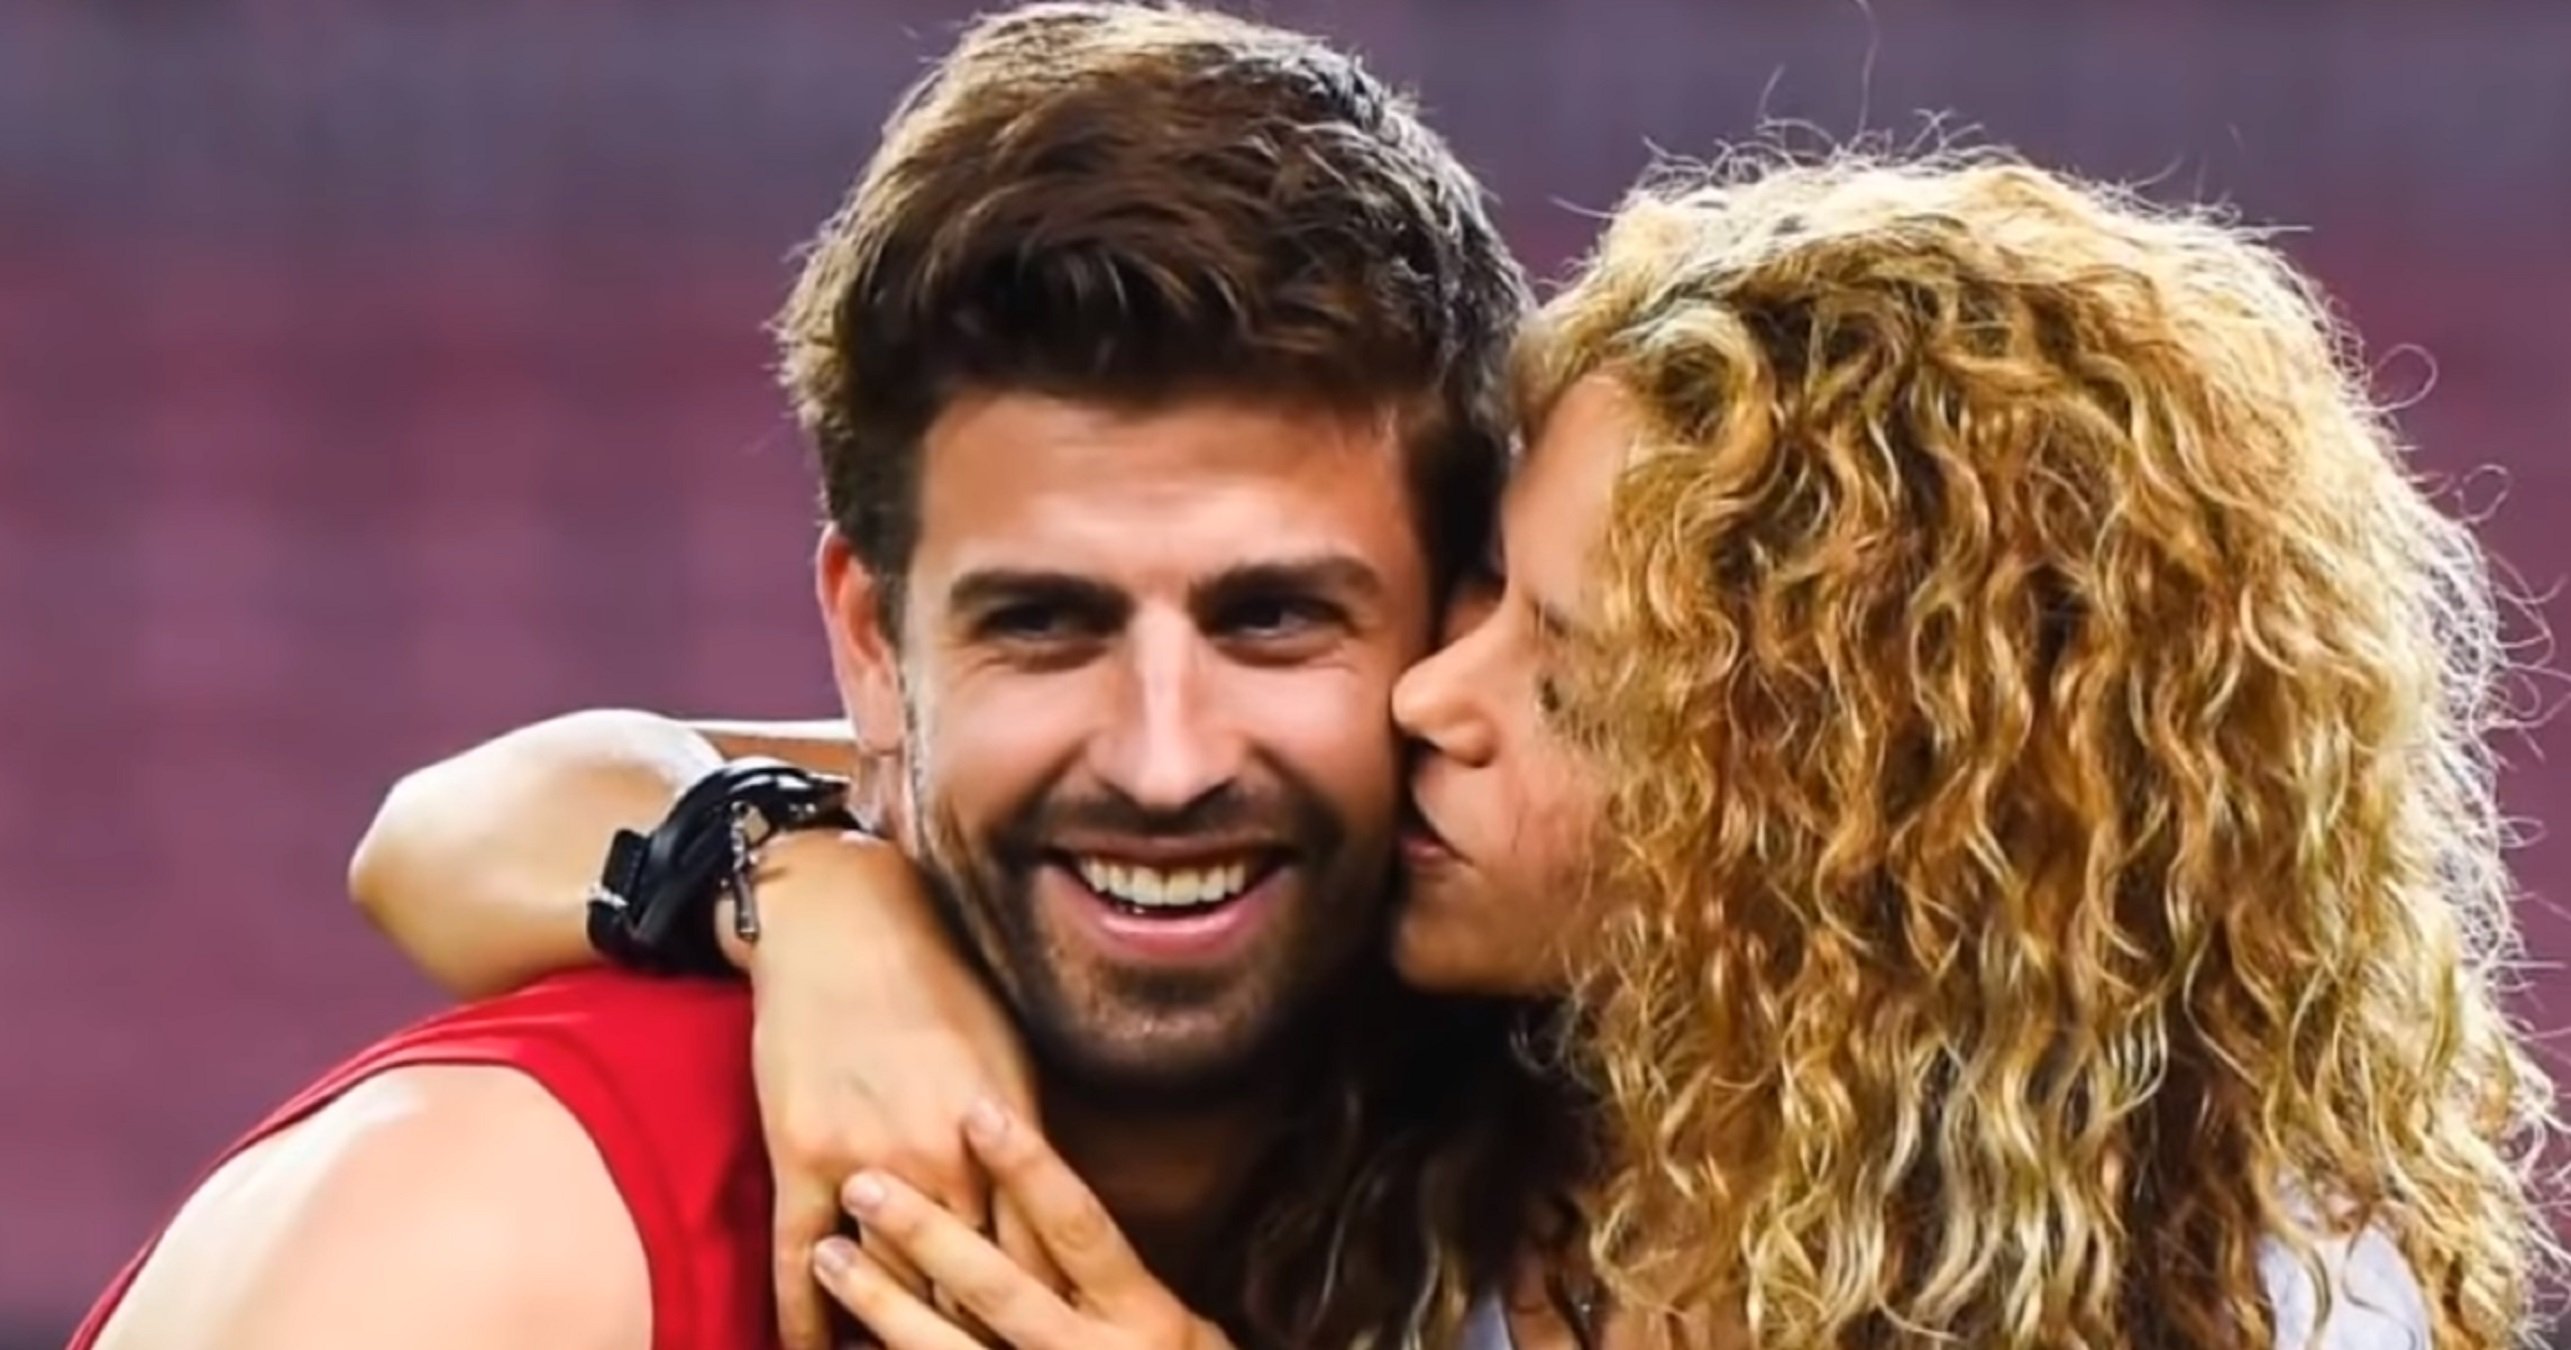 Així anomena Shakira a Piqué en la intimitat: "No es mi marido, es mi..."